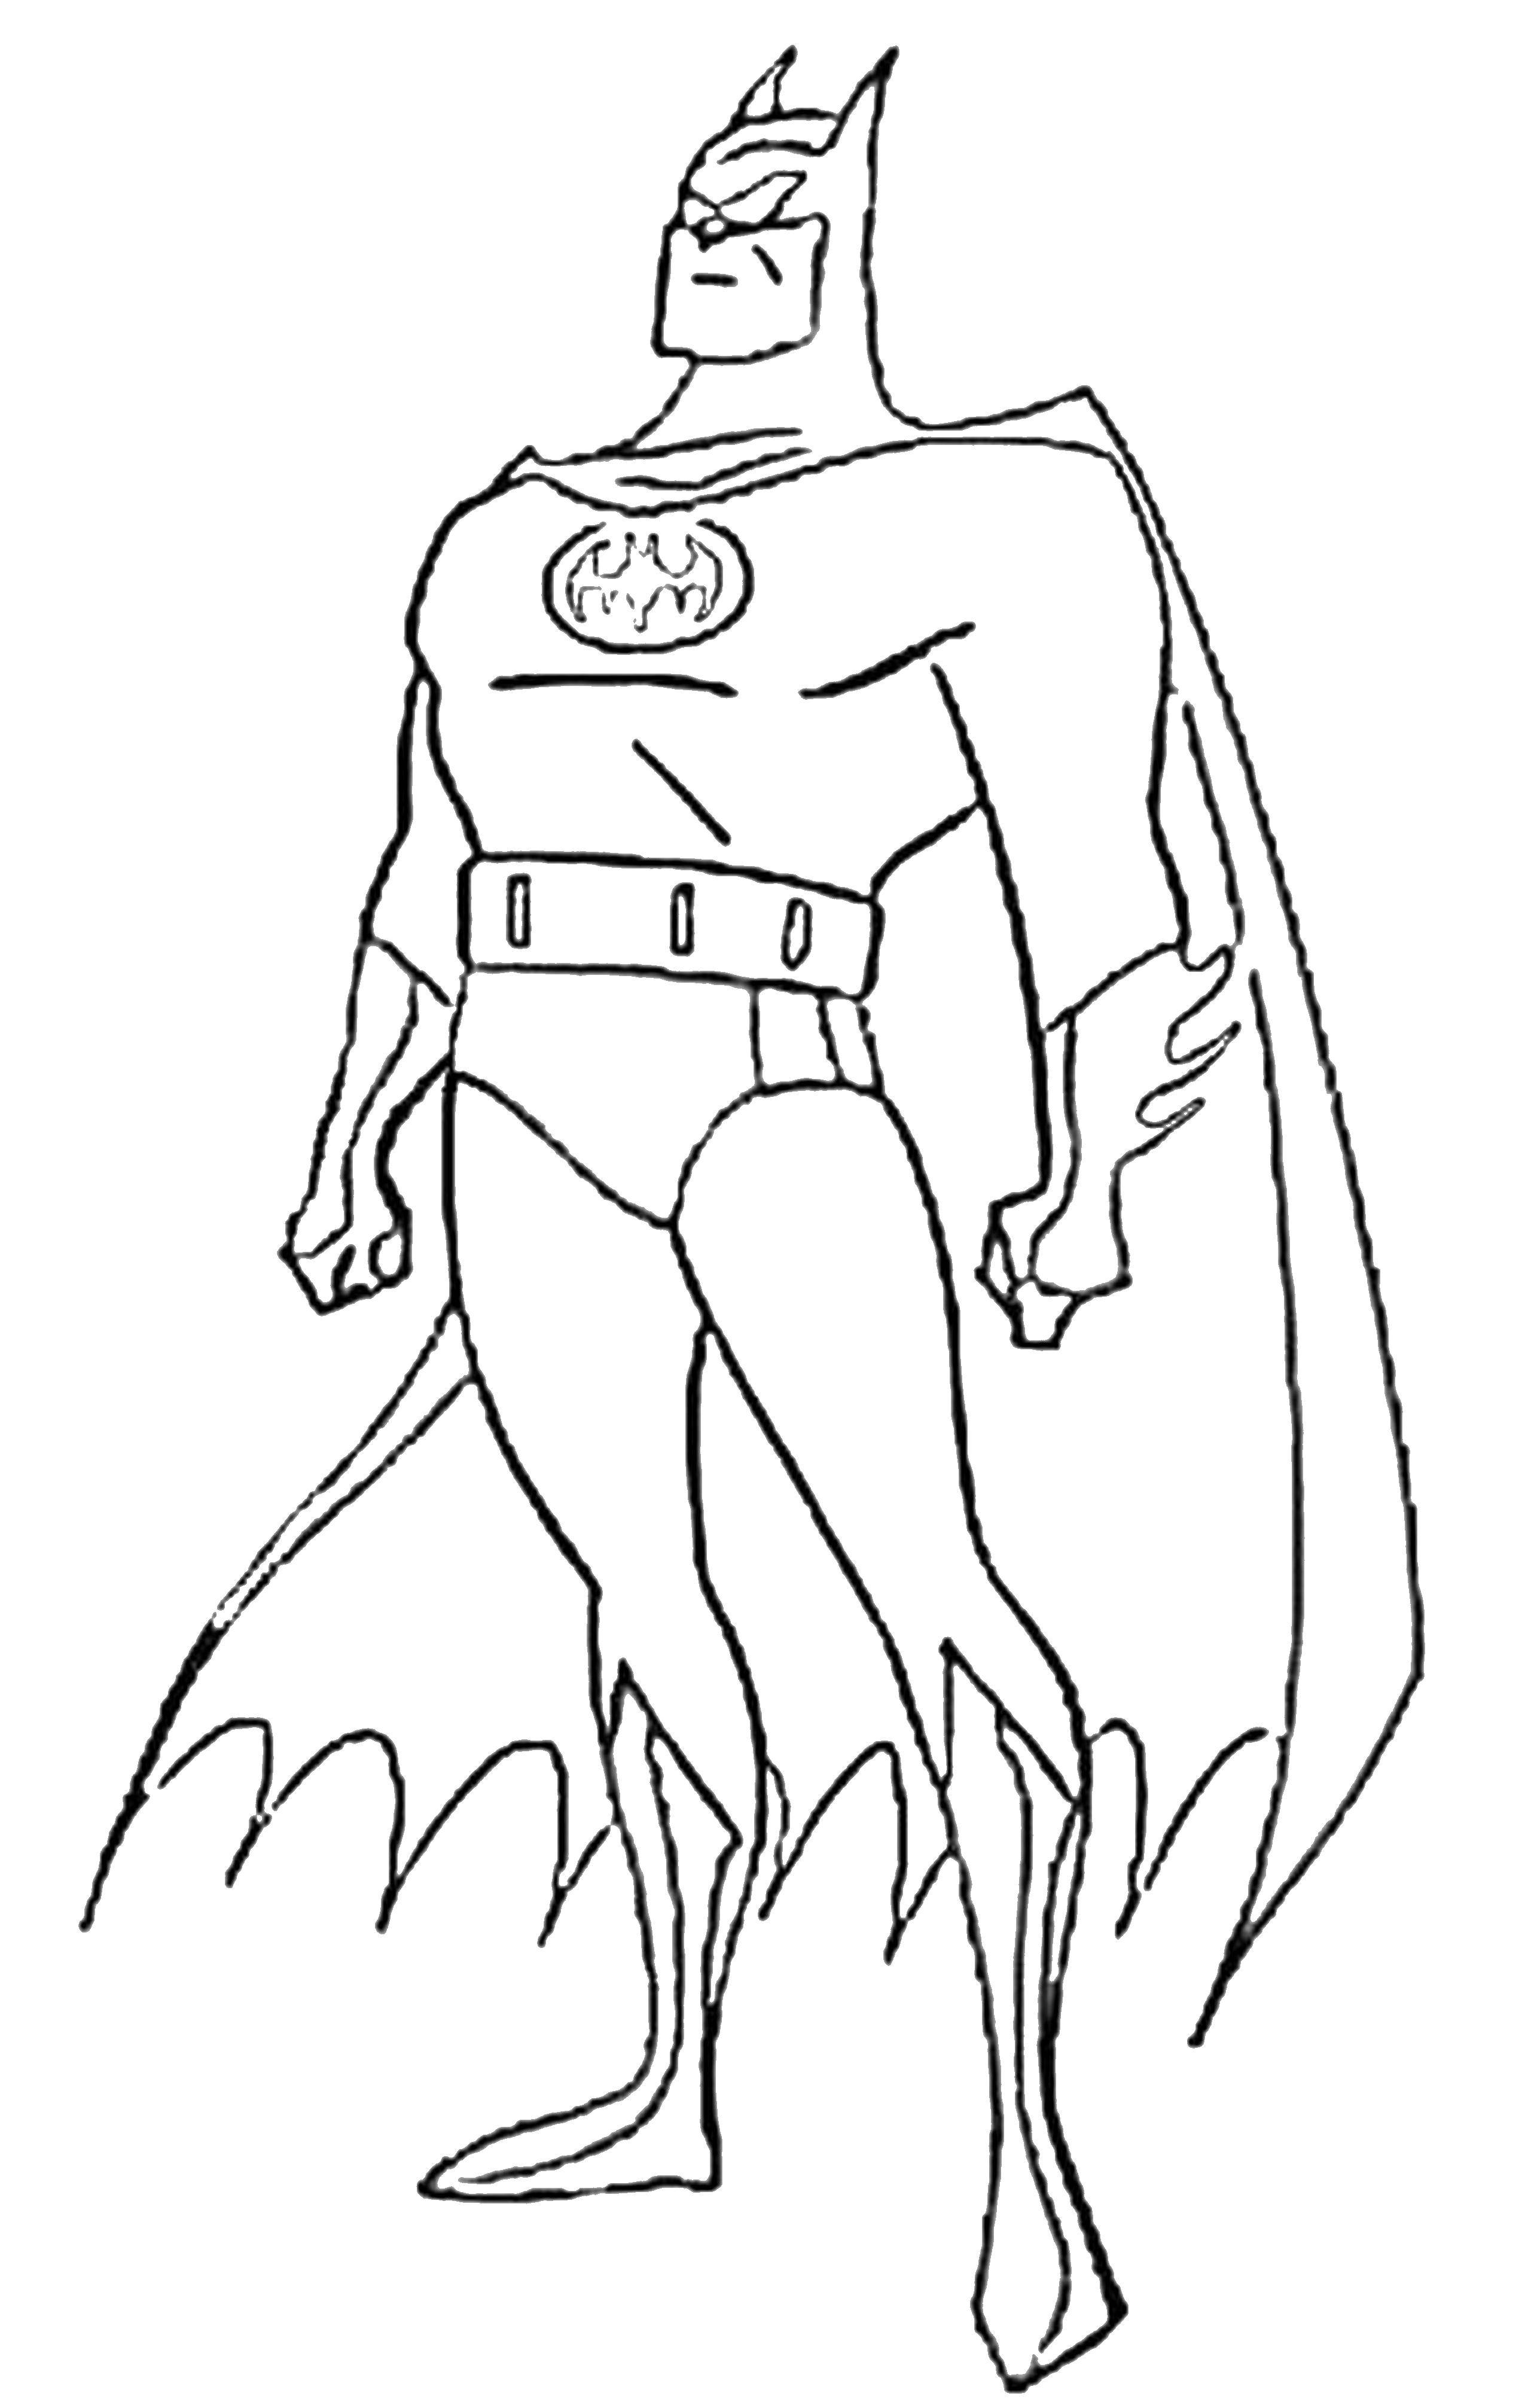 Название: Раскраска Мускулистый бэтмен. Категория: бэтмен. Теги: супергерои, бэтмен, комиксы.